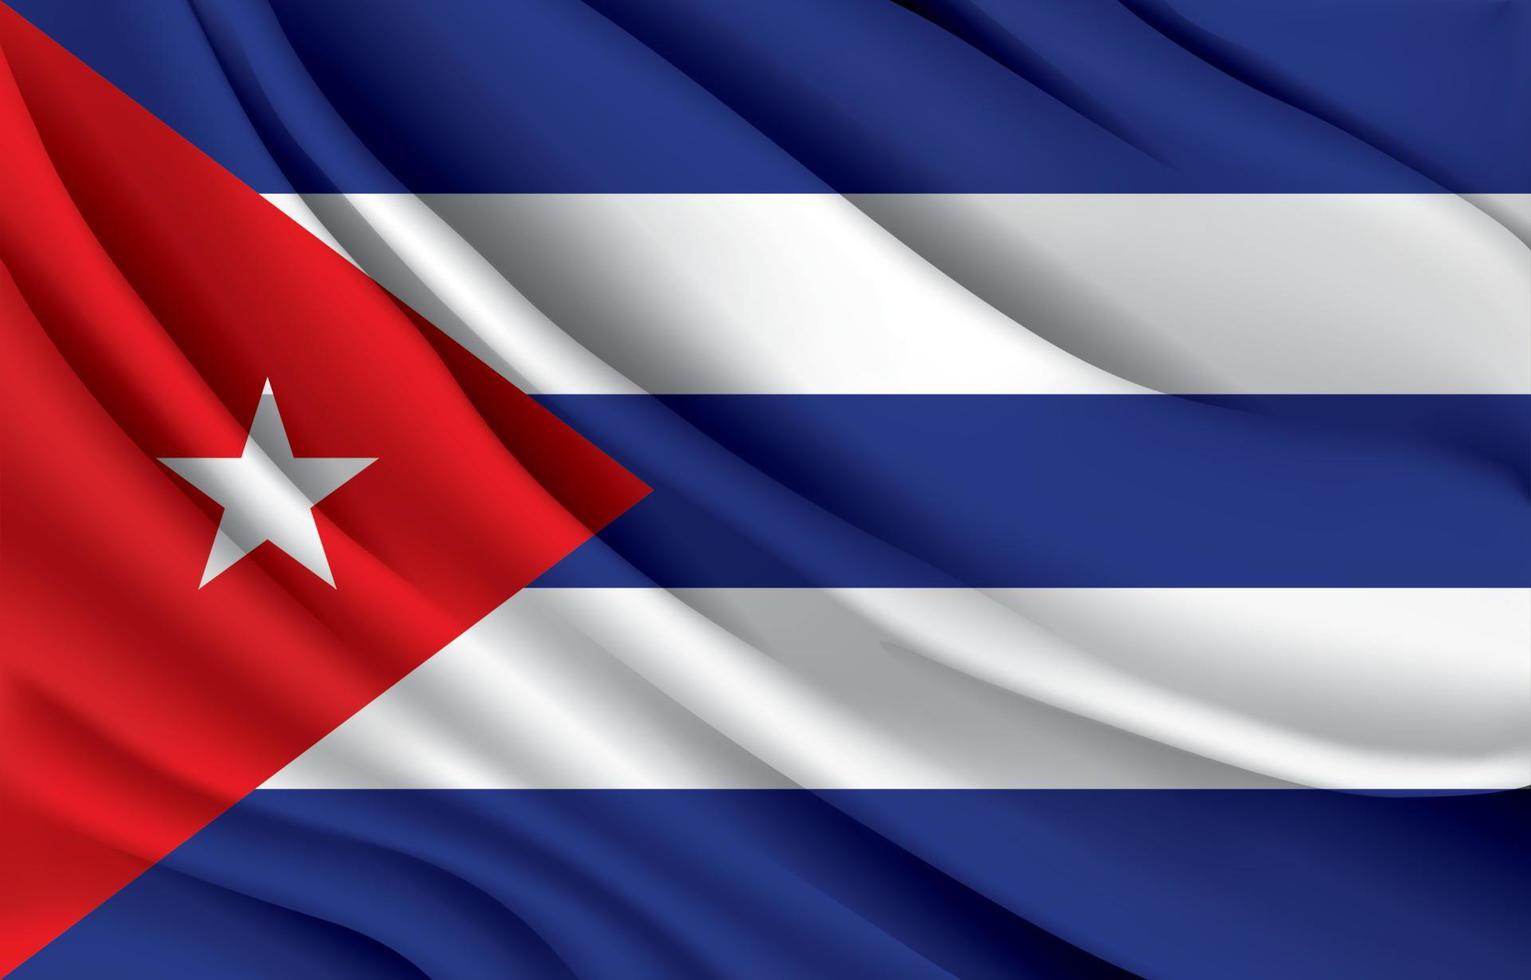 drapeau national de cuba agitant une illustration vectorielle réaliste vecteur